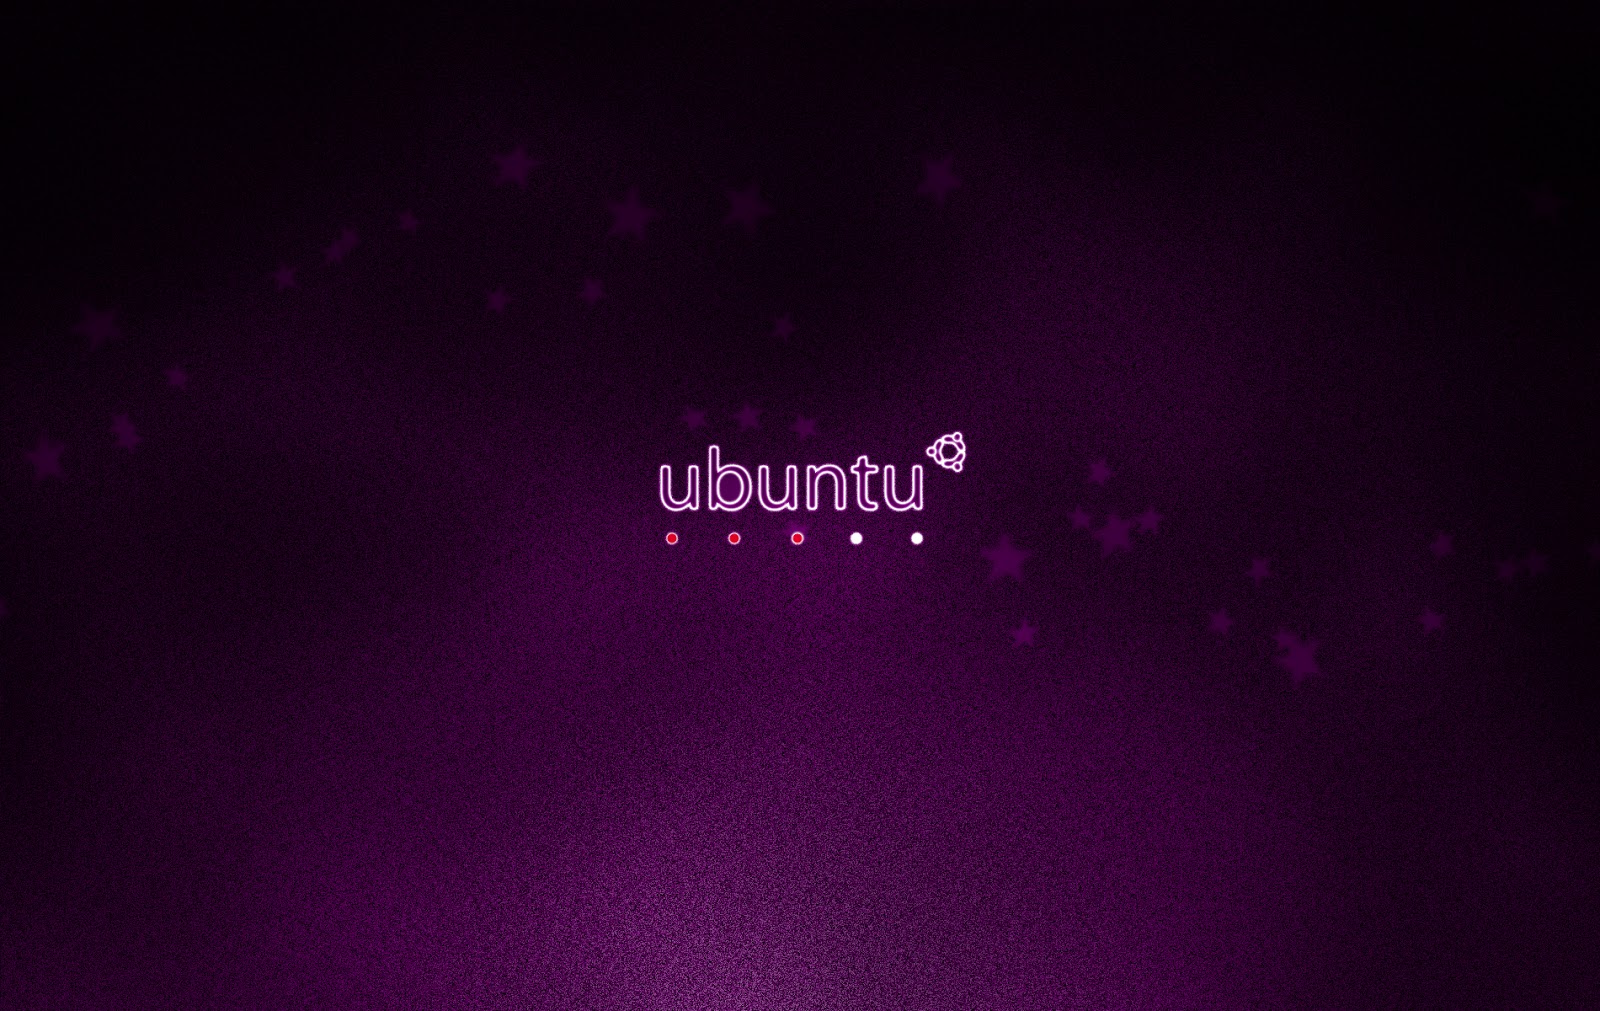 ubuntu hd wallpapers ubuntu hd wallpapers ubuntu hd wallpapers ubuntu